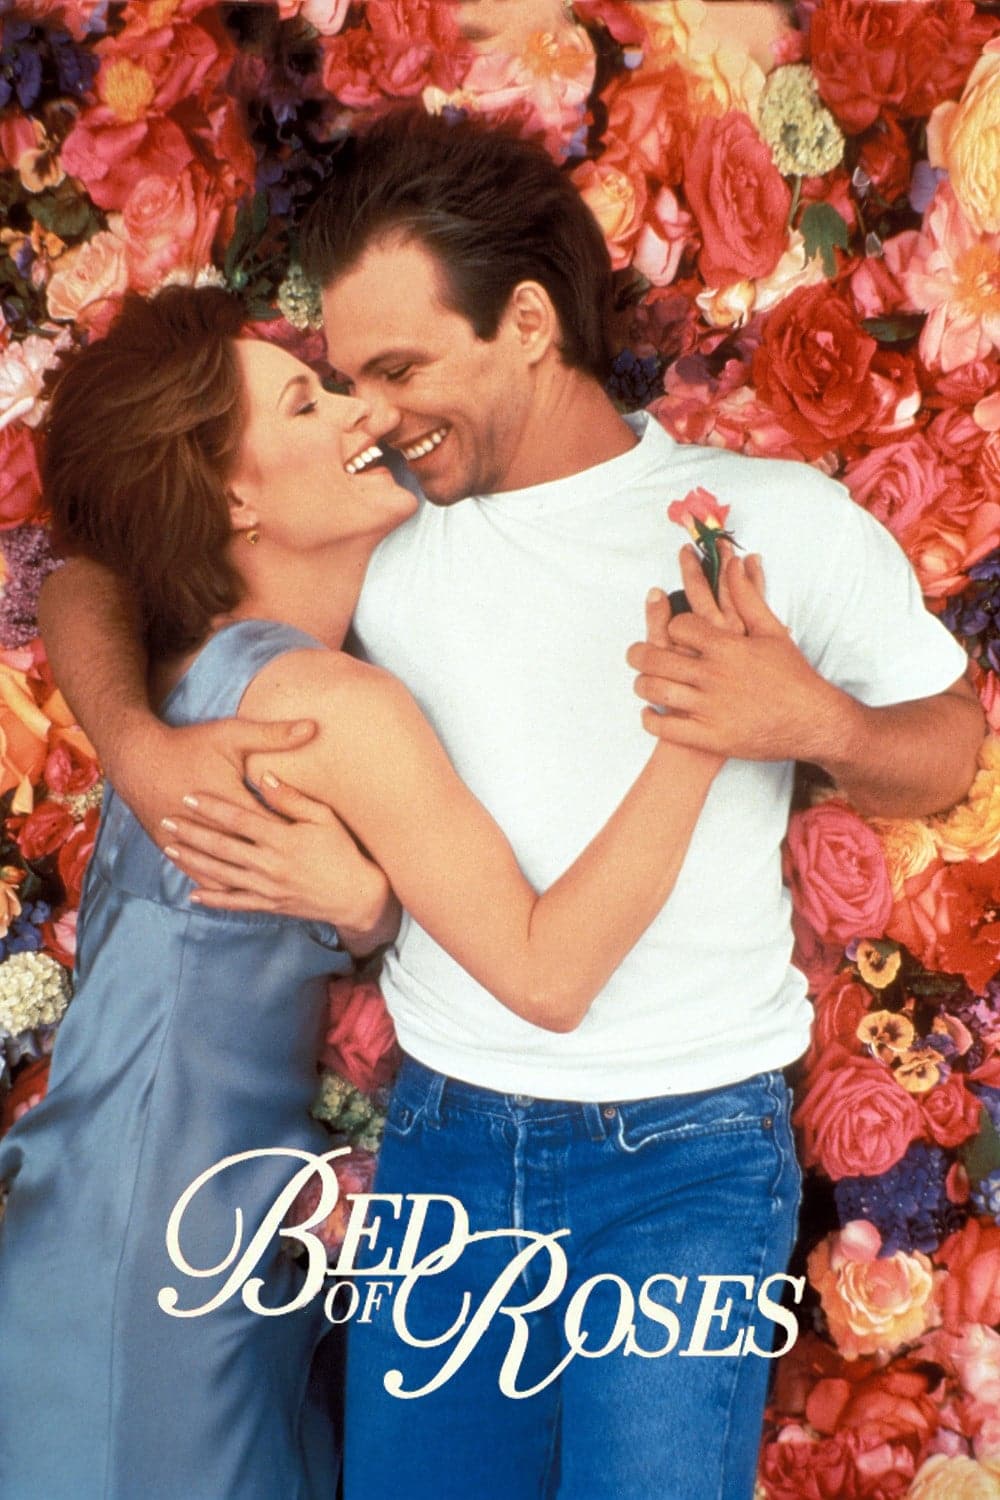 Plakat von "Das Rosenbett"